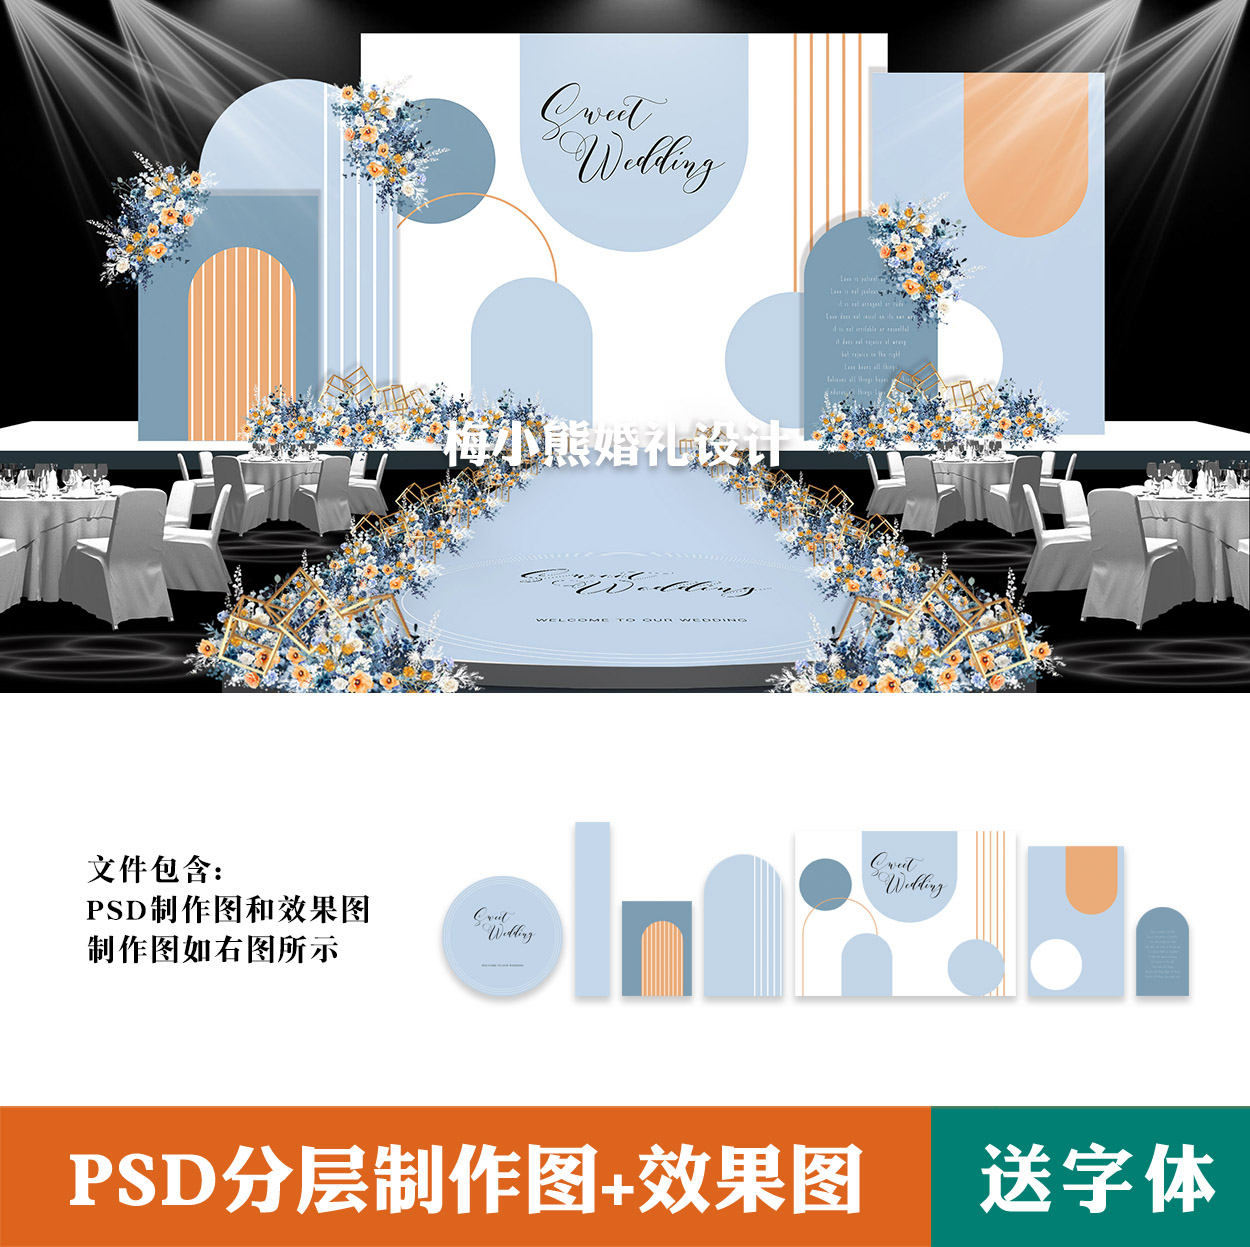 蓝色橙色撞色小清新婚礼背景设计图 婚庆舞台喷绘PSD方案素材模板